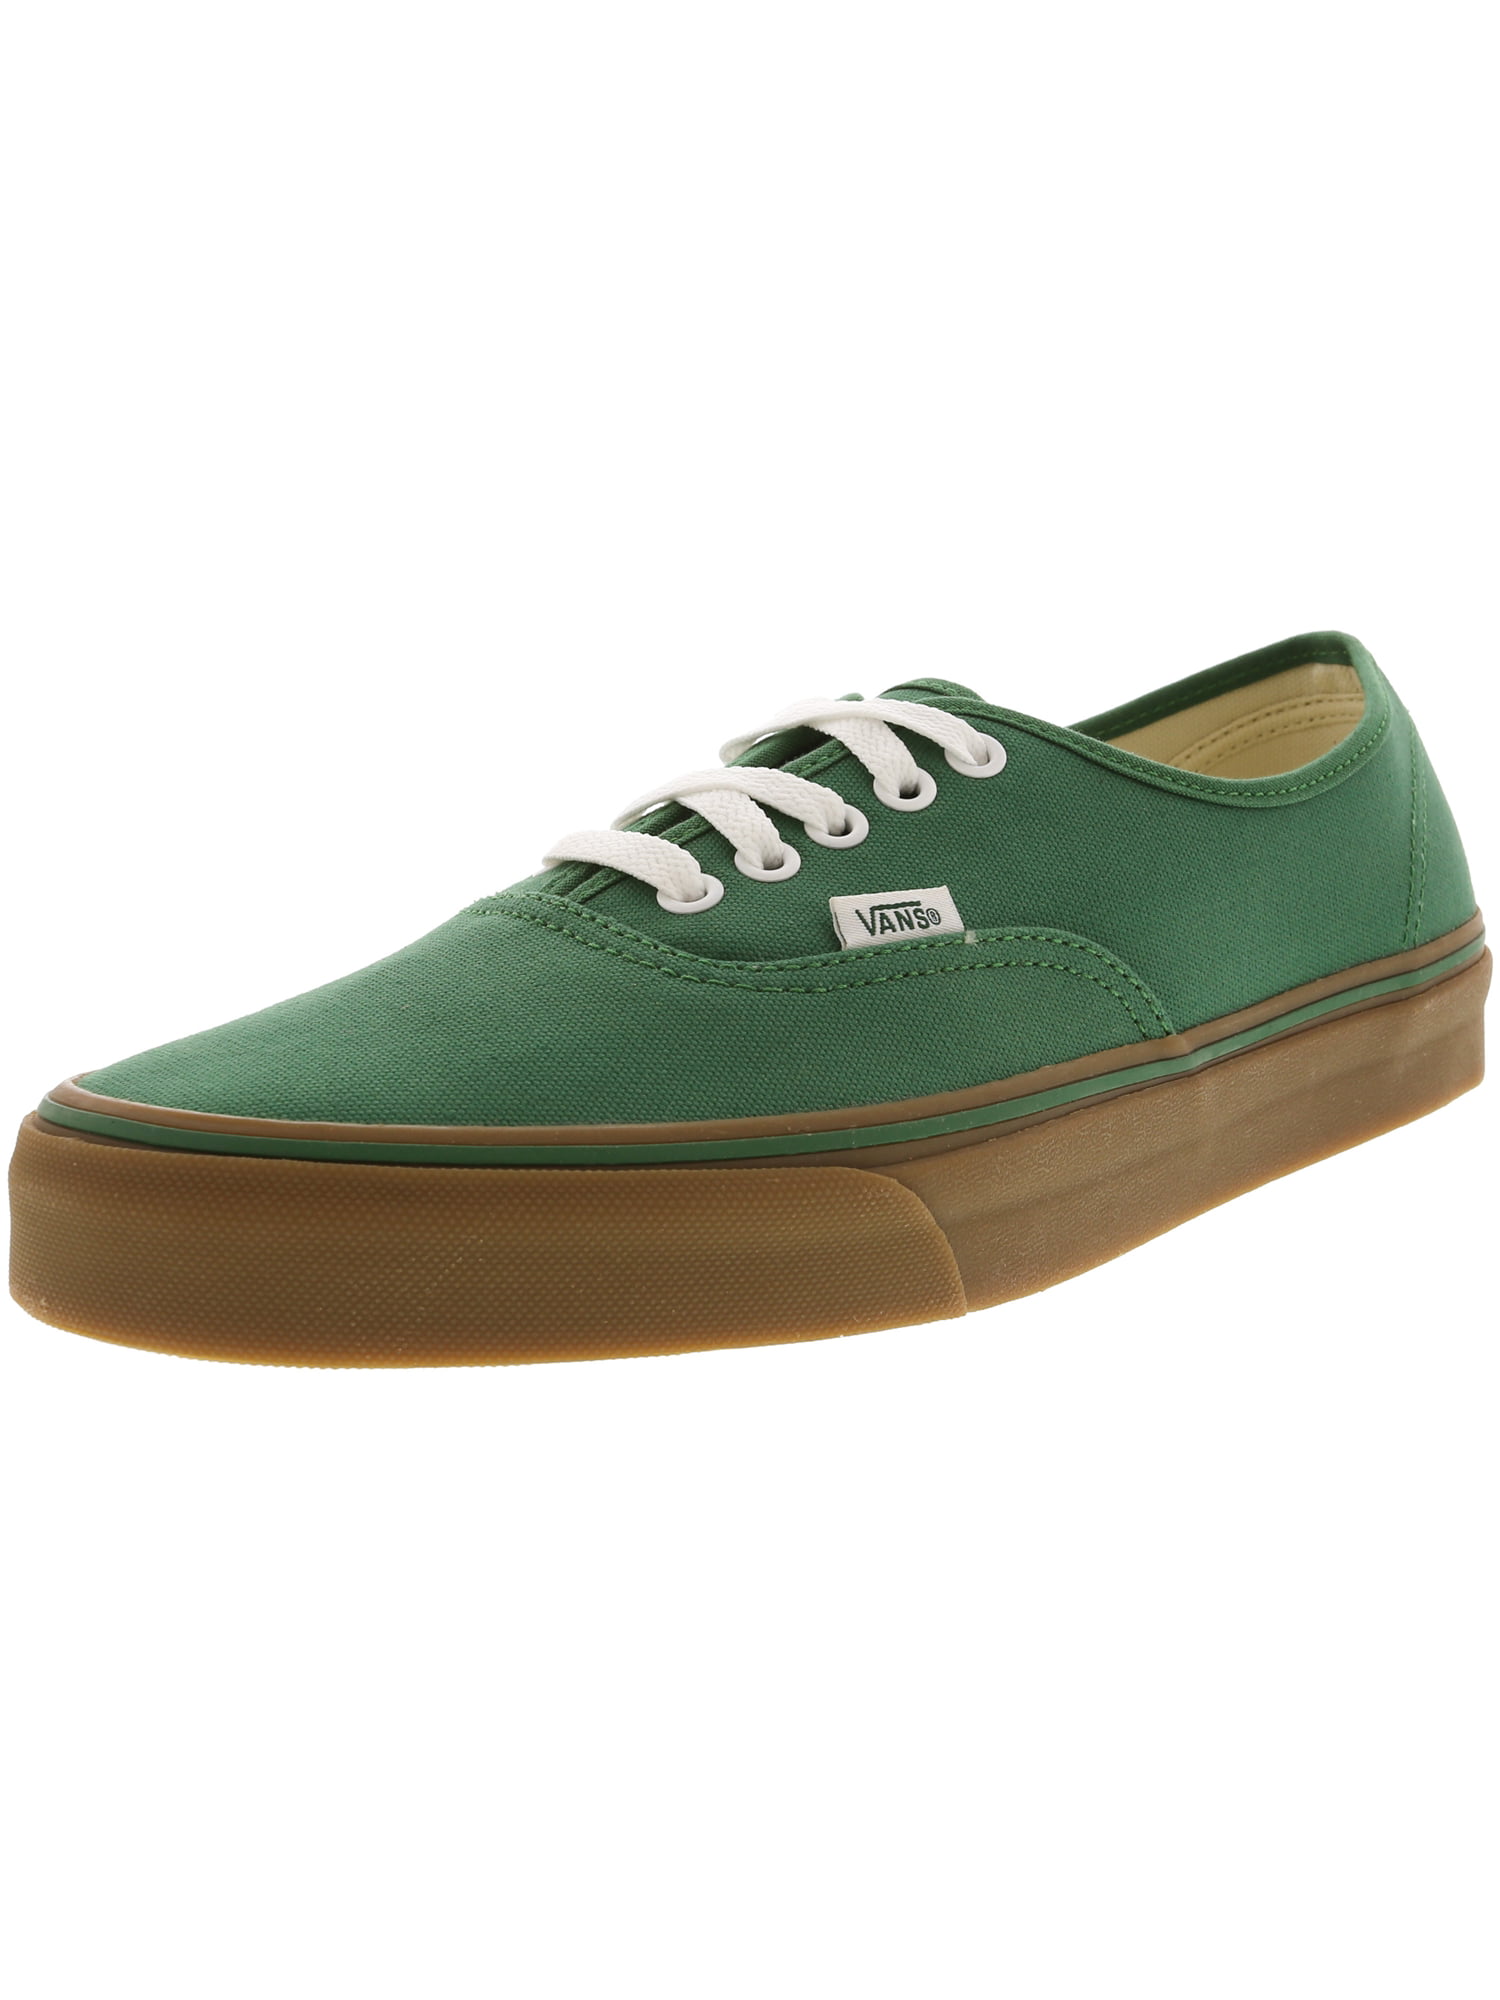 Authentic Gumsole Verdant Green / Gum Ankle-High Canvas Skateboarding Shoe - 11M 9.5M - Walmart.com